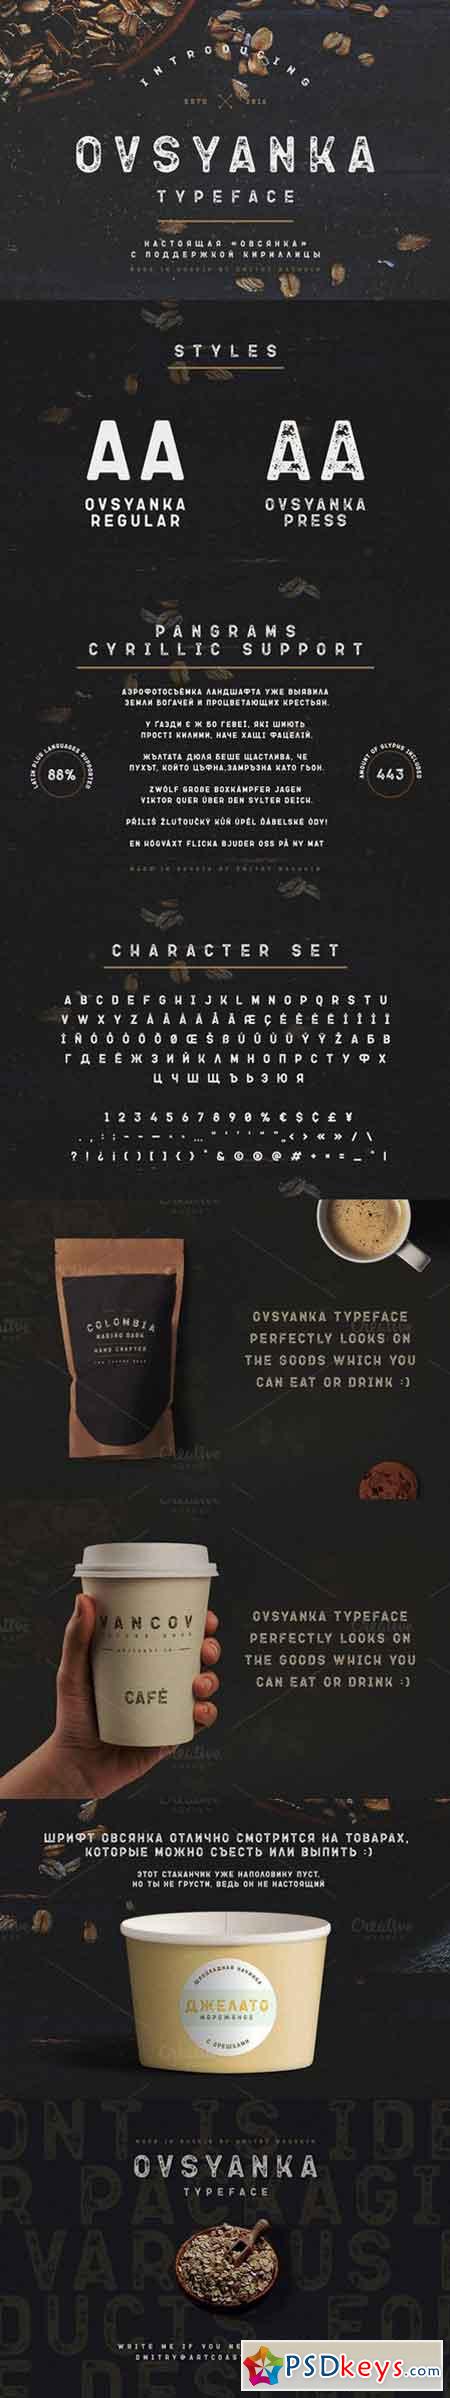 Ovsyanka Typeface 724199